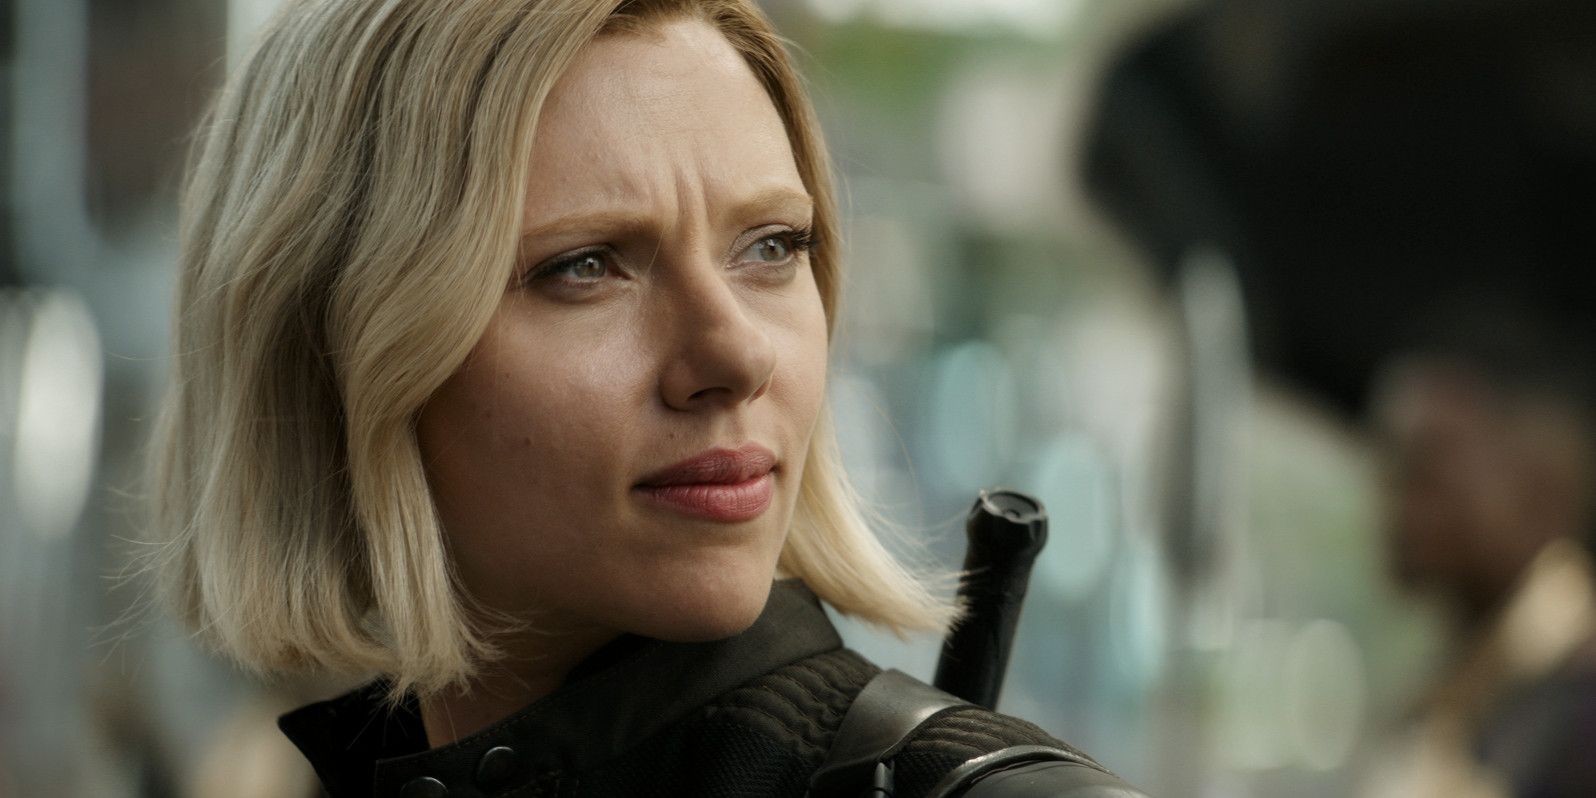 Scarlett Johansson as Natasha Romanoff aka Black Widow in Wakanda Avengers Infinity War